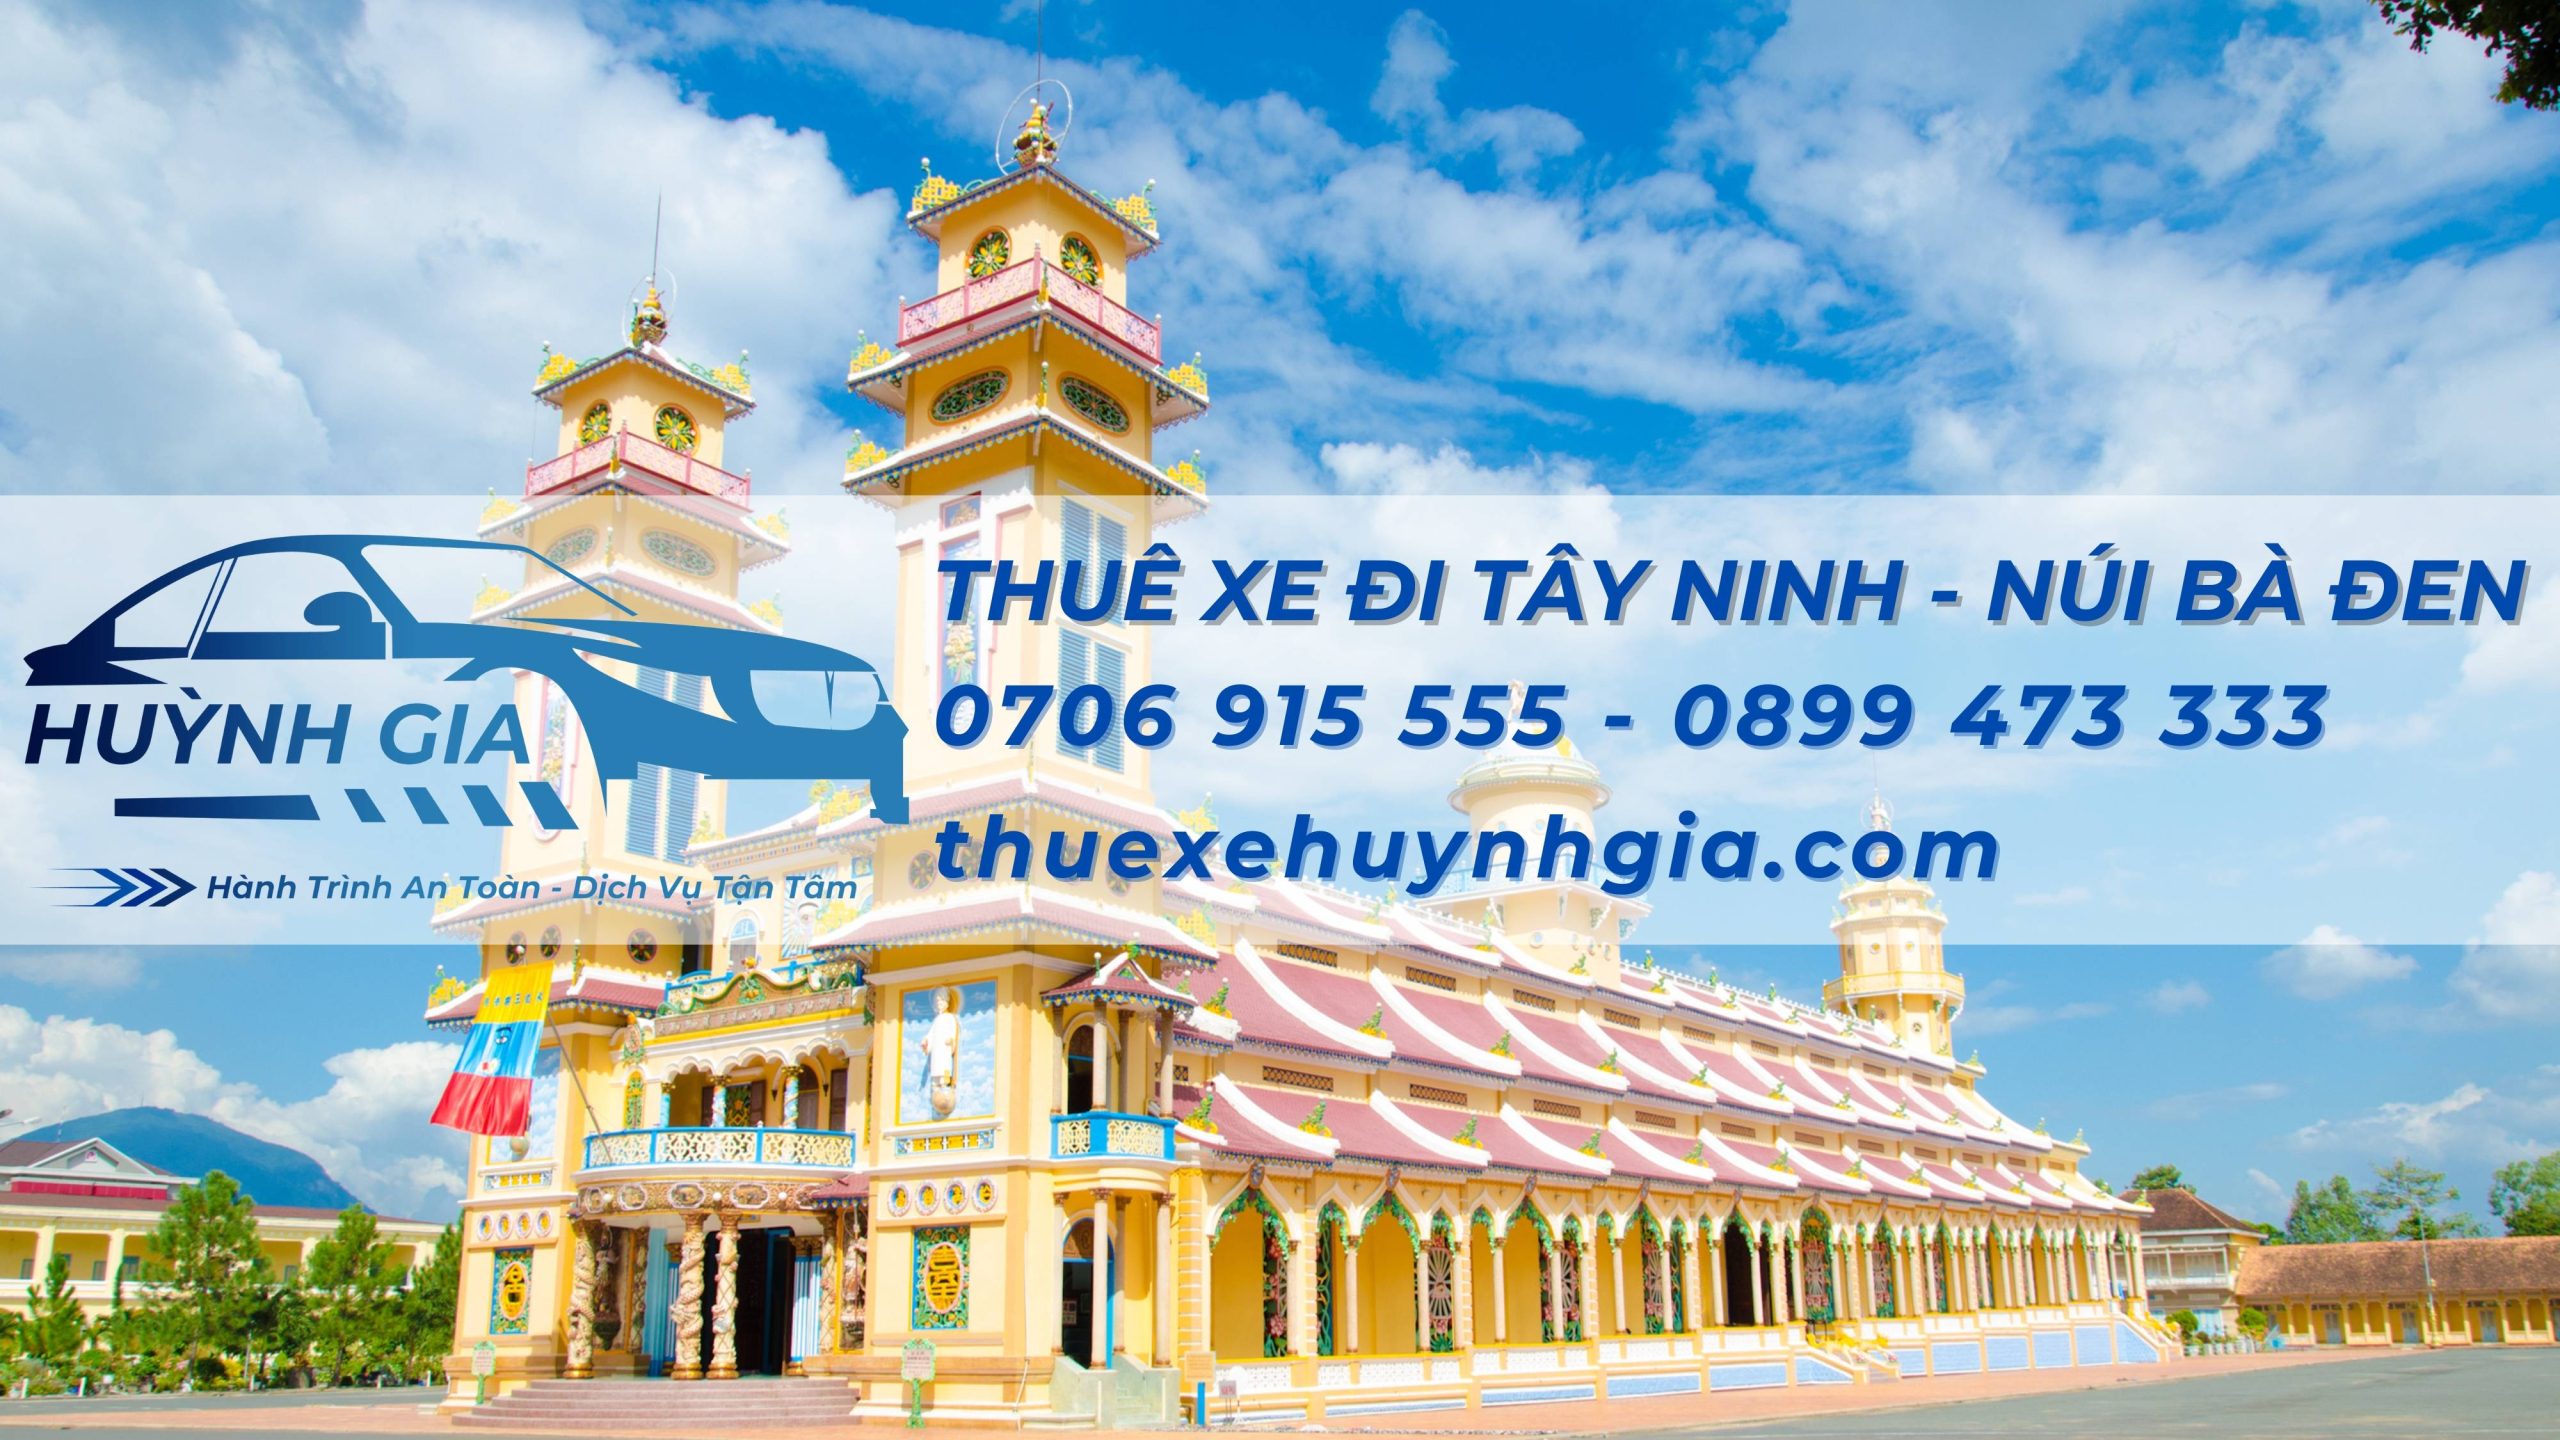 Dịch vụ cho thuê xe đi Tây Ninh Núi Bà Đen giá siêu rẻ hiện nay